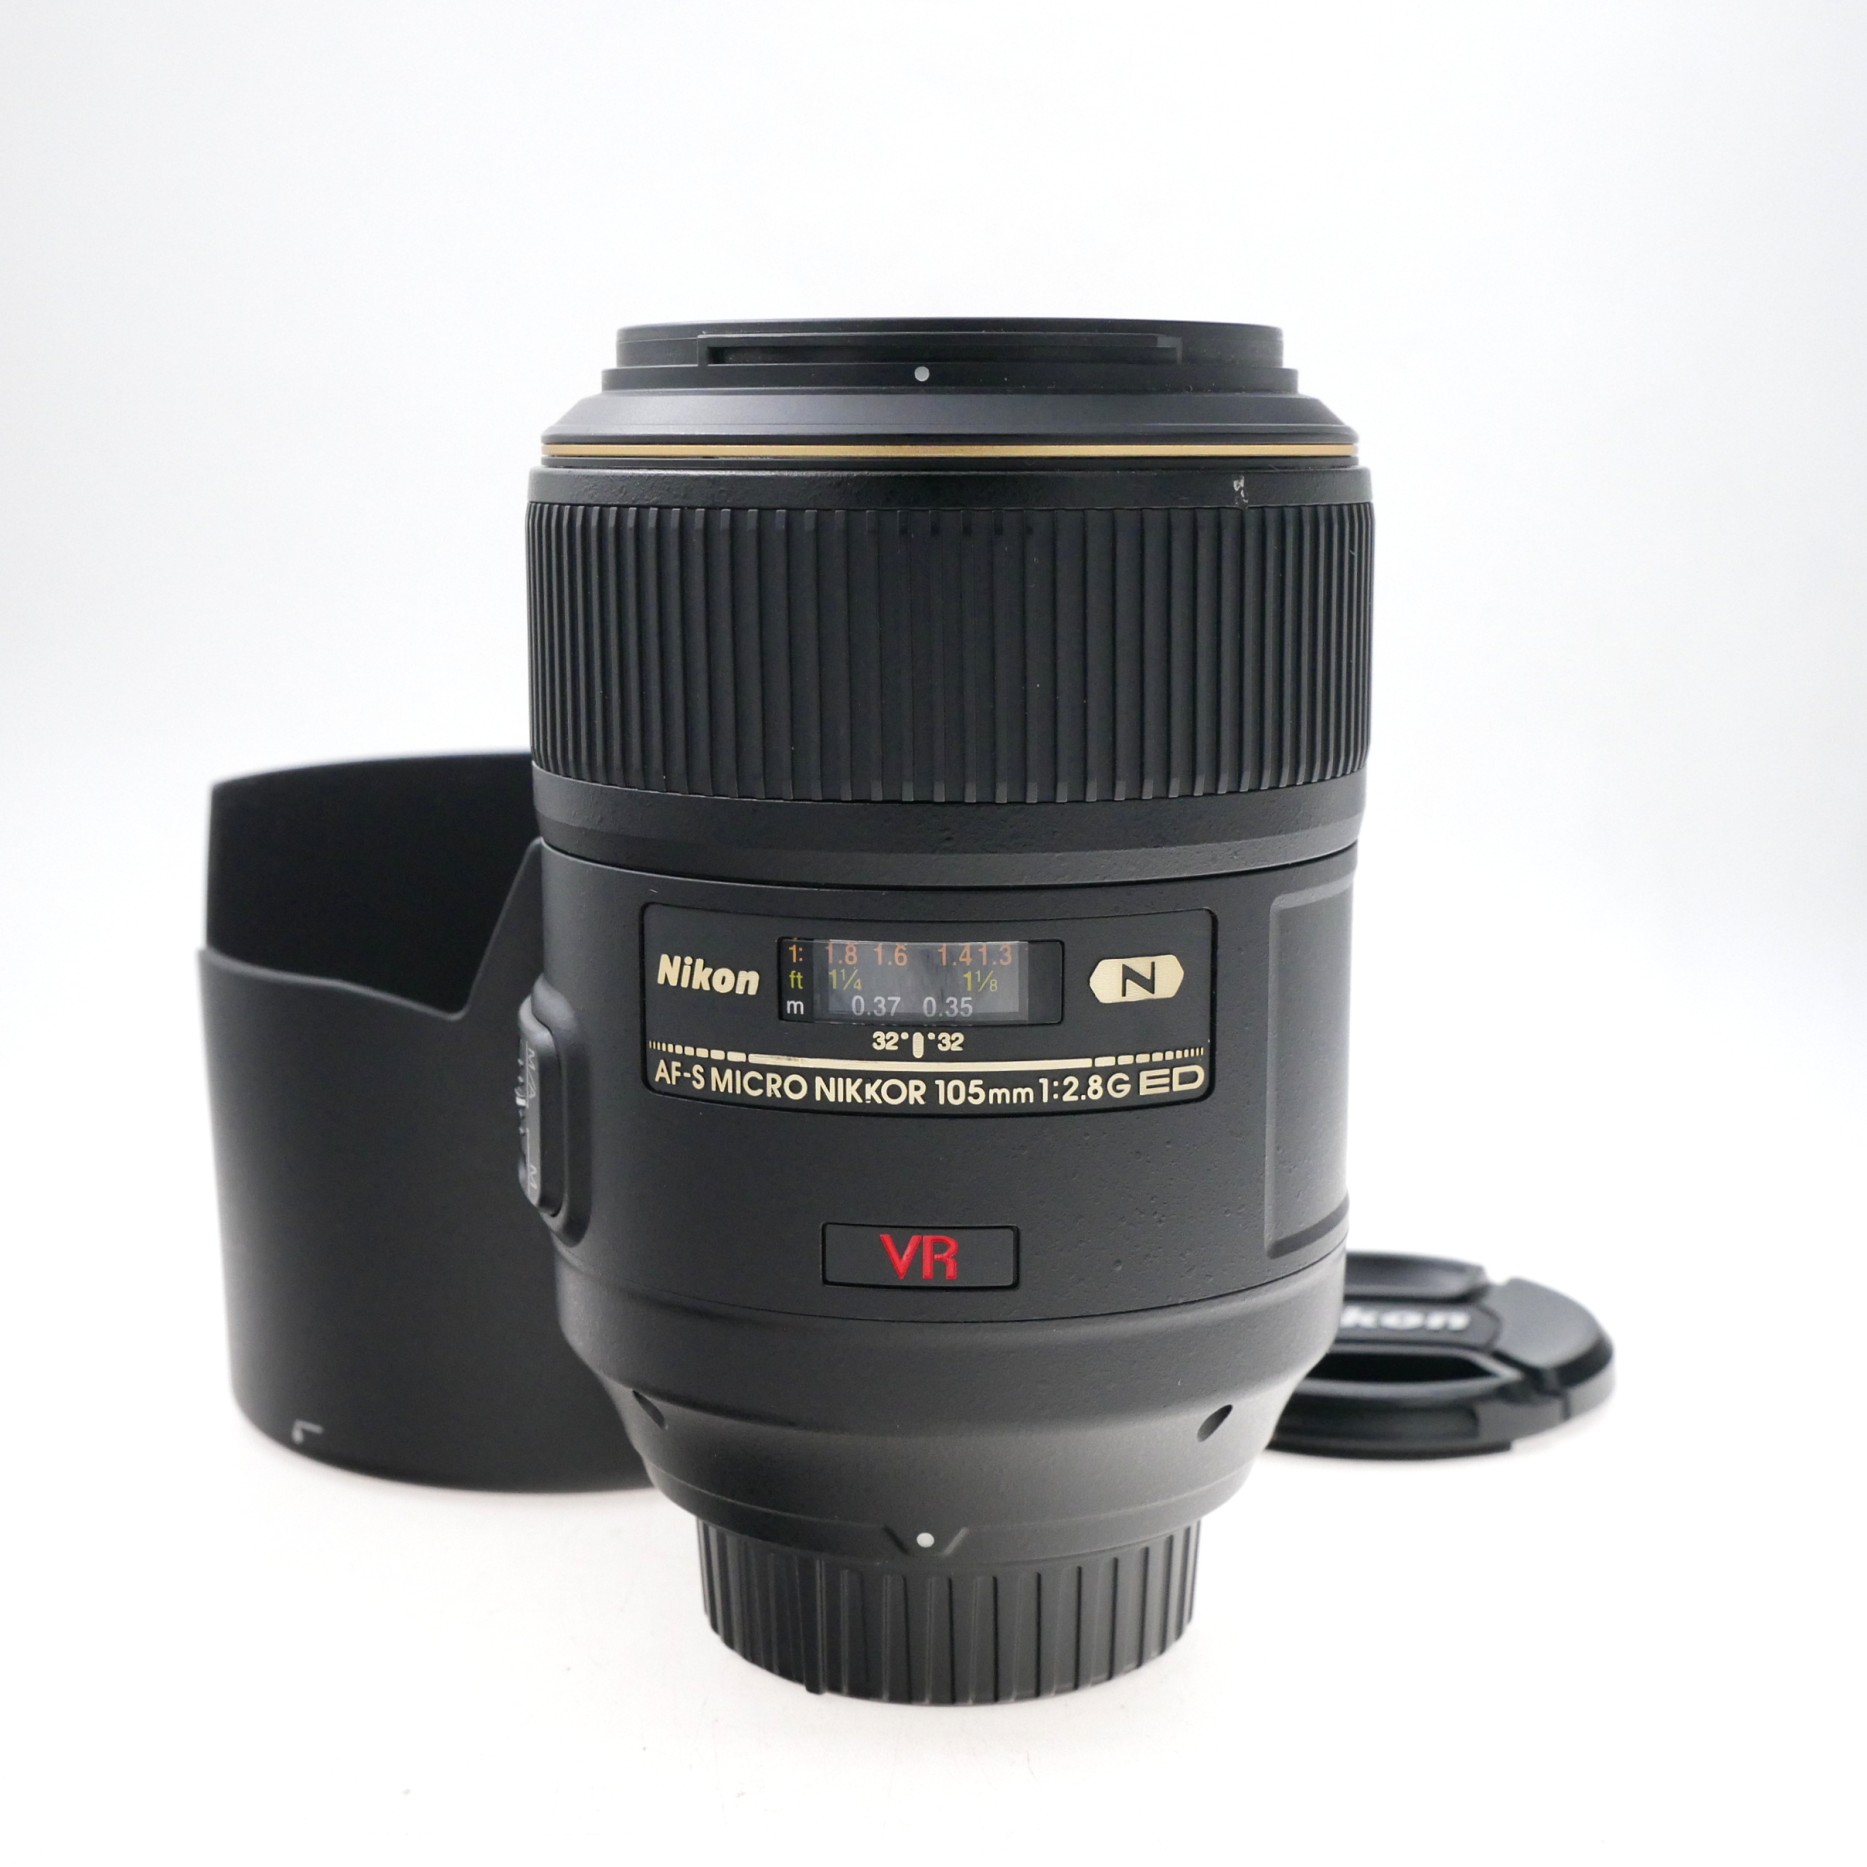 Nikon AF-S VR Micro 105mm F2.8 G IF-ED Lens 